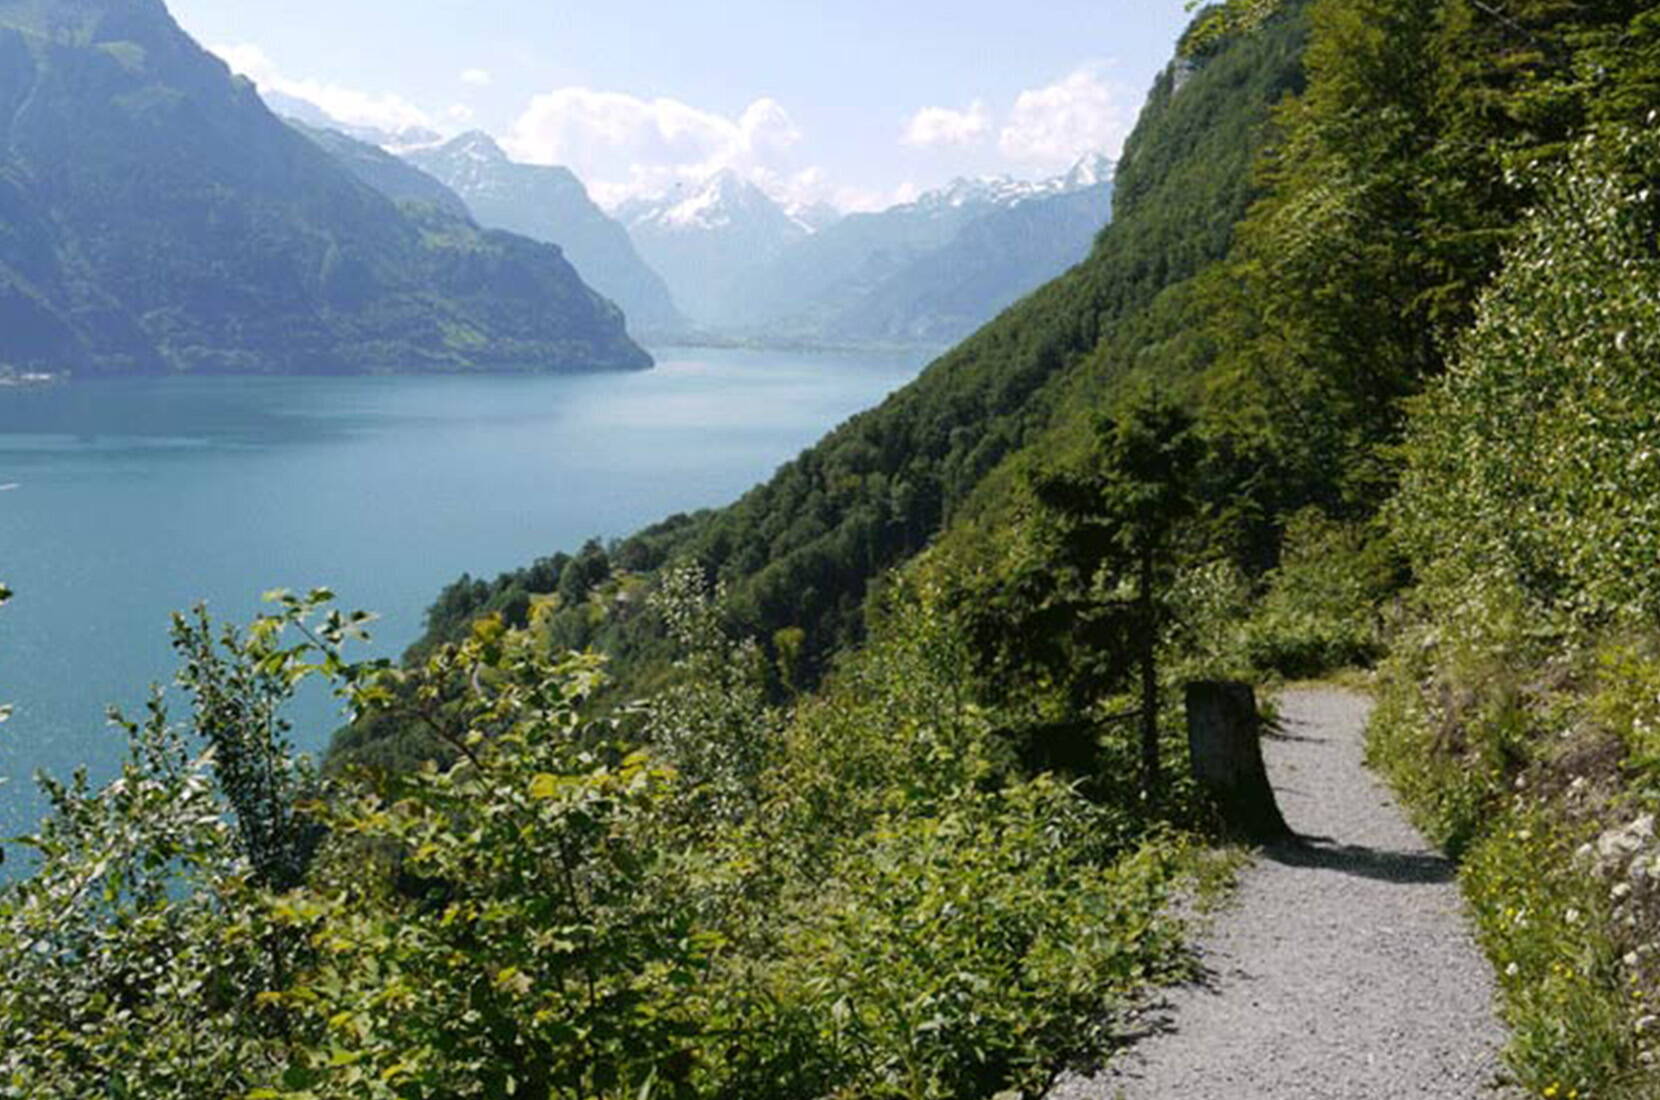 Der beschilderte und gut ausgebaute Weg ist 35 Kilometer lang. Jeder Schweizer Kanton hat einen Weganteil, der sich nach der Zahl der Einwohner richtet, sodass jedem Schweizer rund 5 mm des Weges gehören.